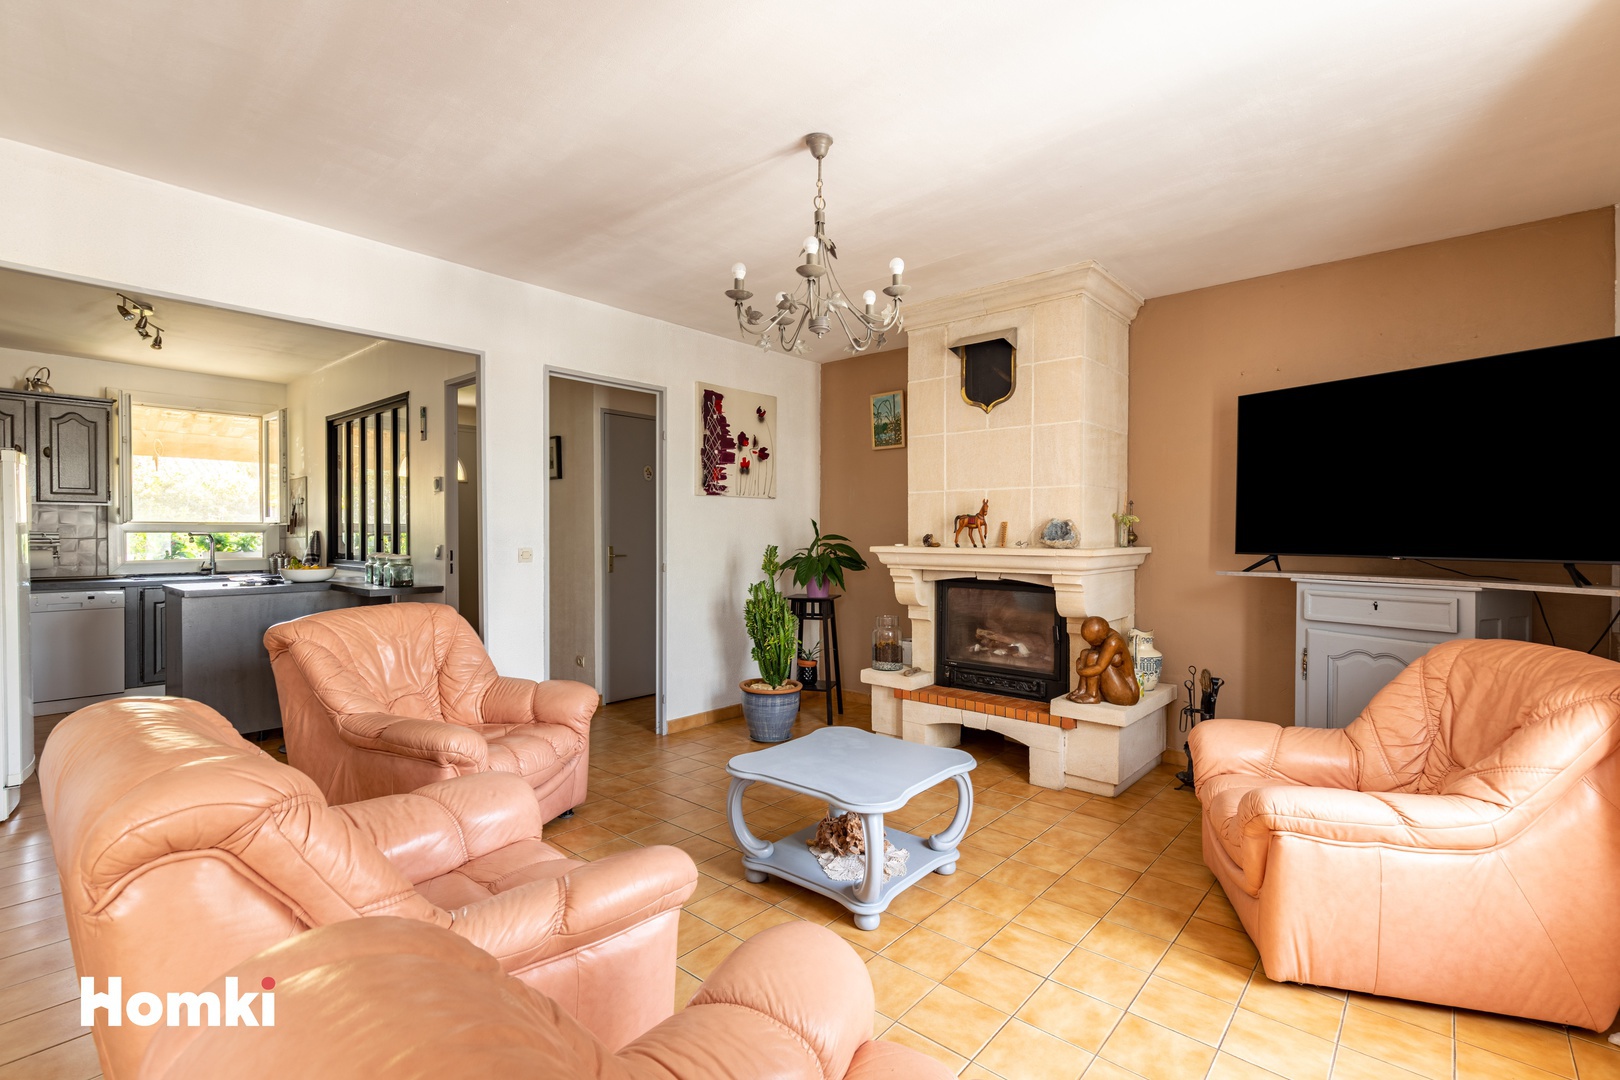 Homki - Vente Maison/villa  de 78.0 m² à Rochefort-du-Gard 30650